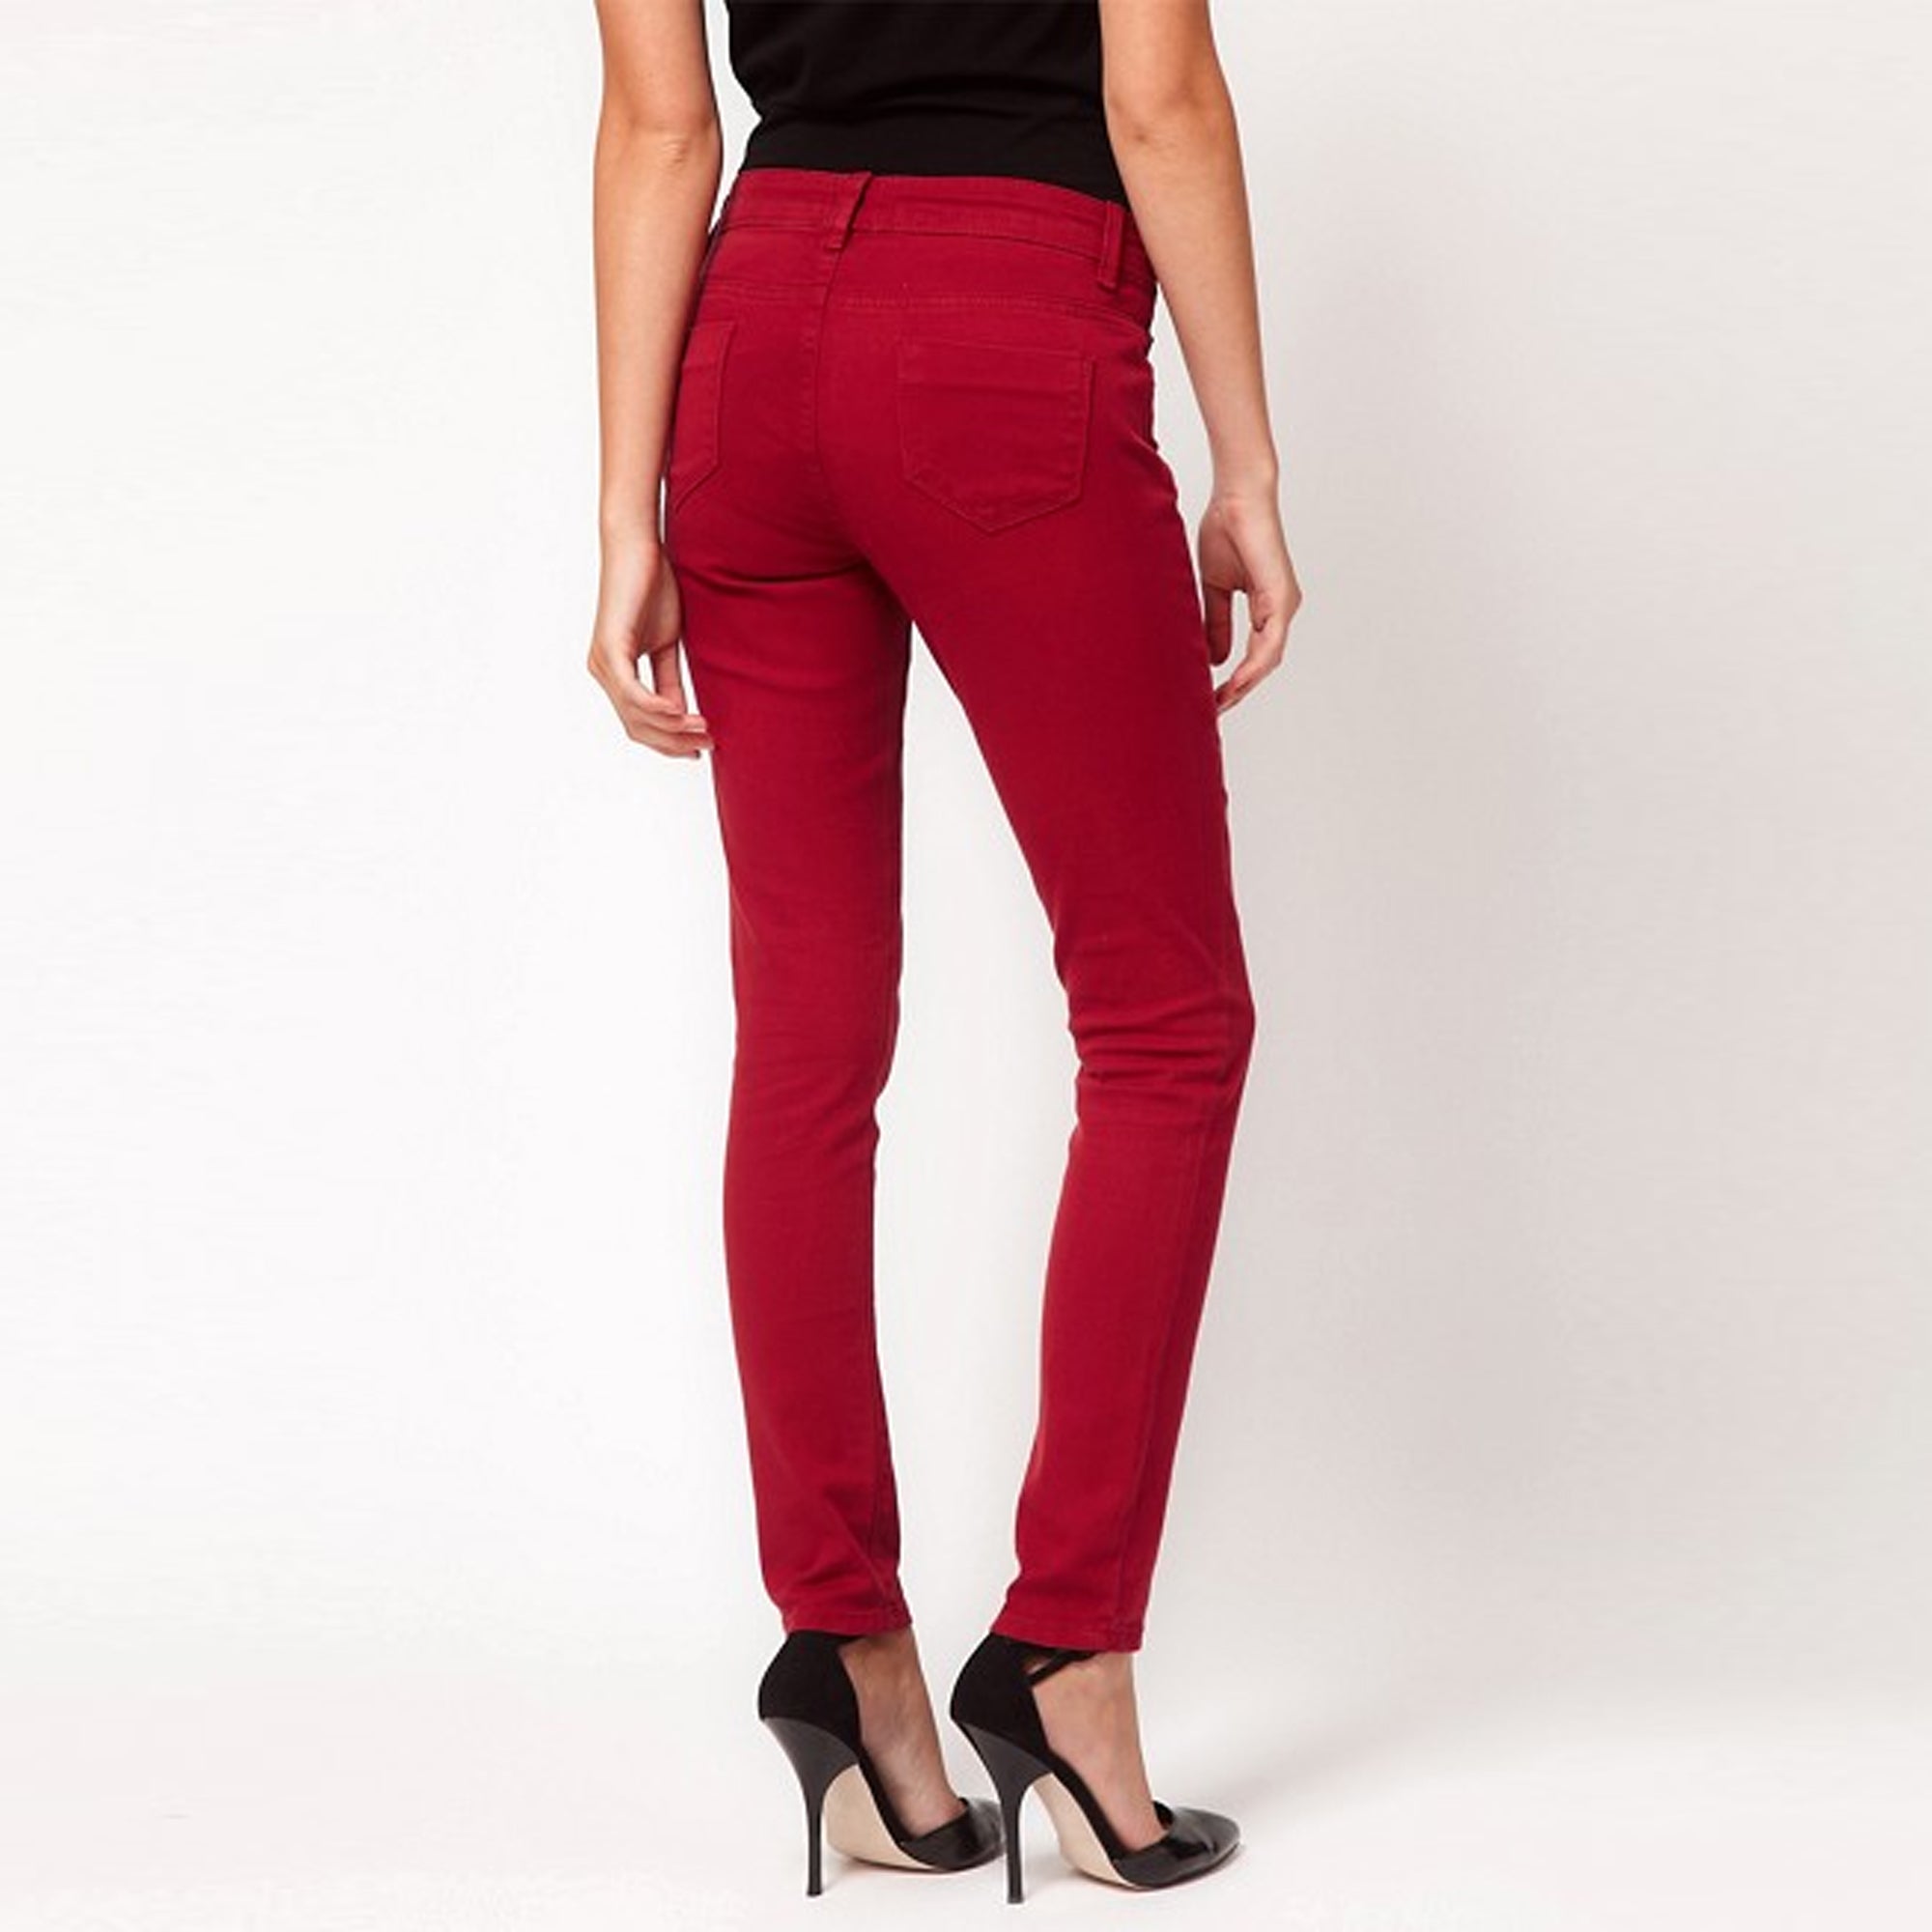 S.P.R.I.N.G.F.I.E.L.D - Women 'Red' Skinny Fit Jeans SF07 - greenshoppy.com